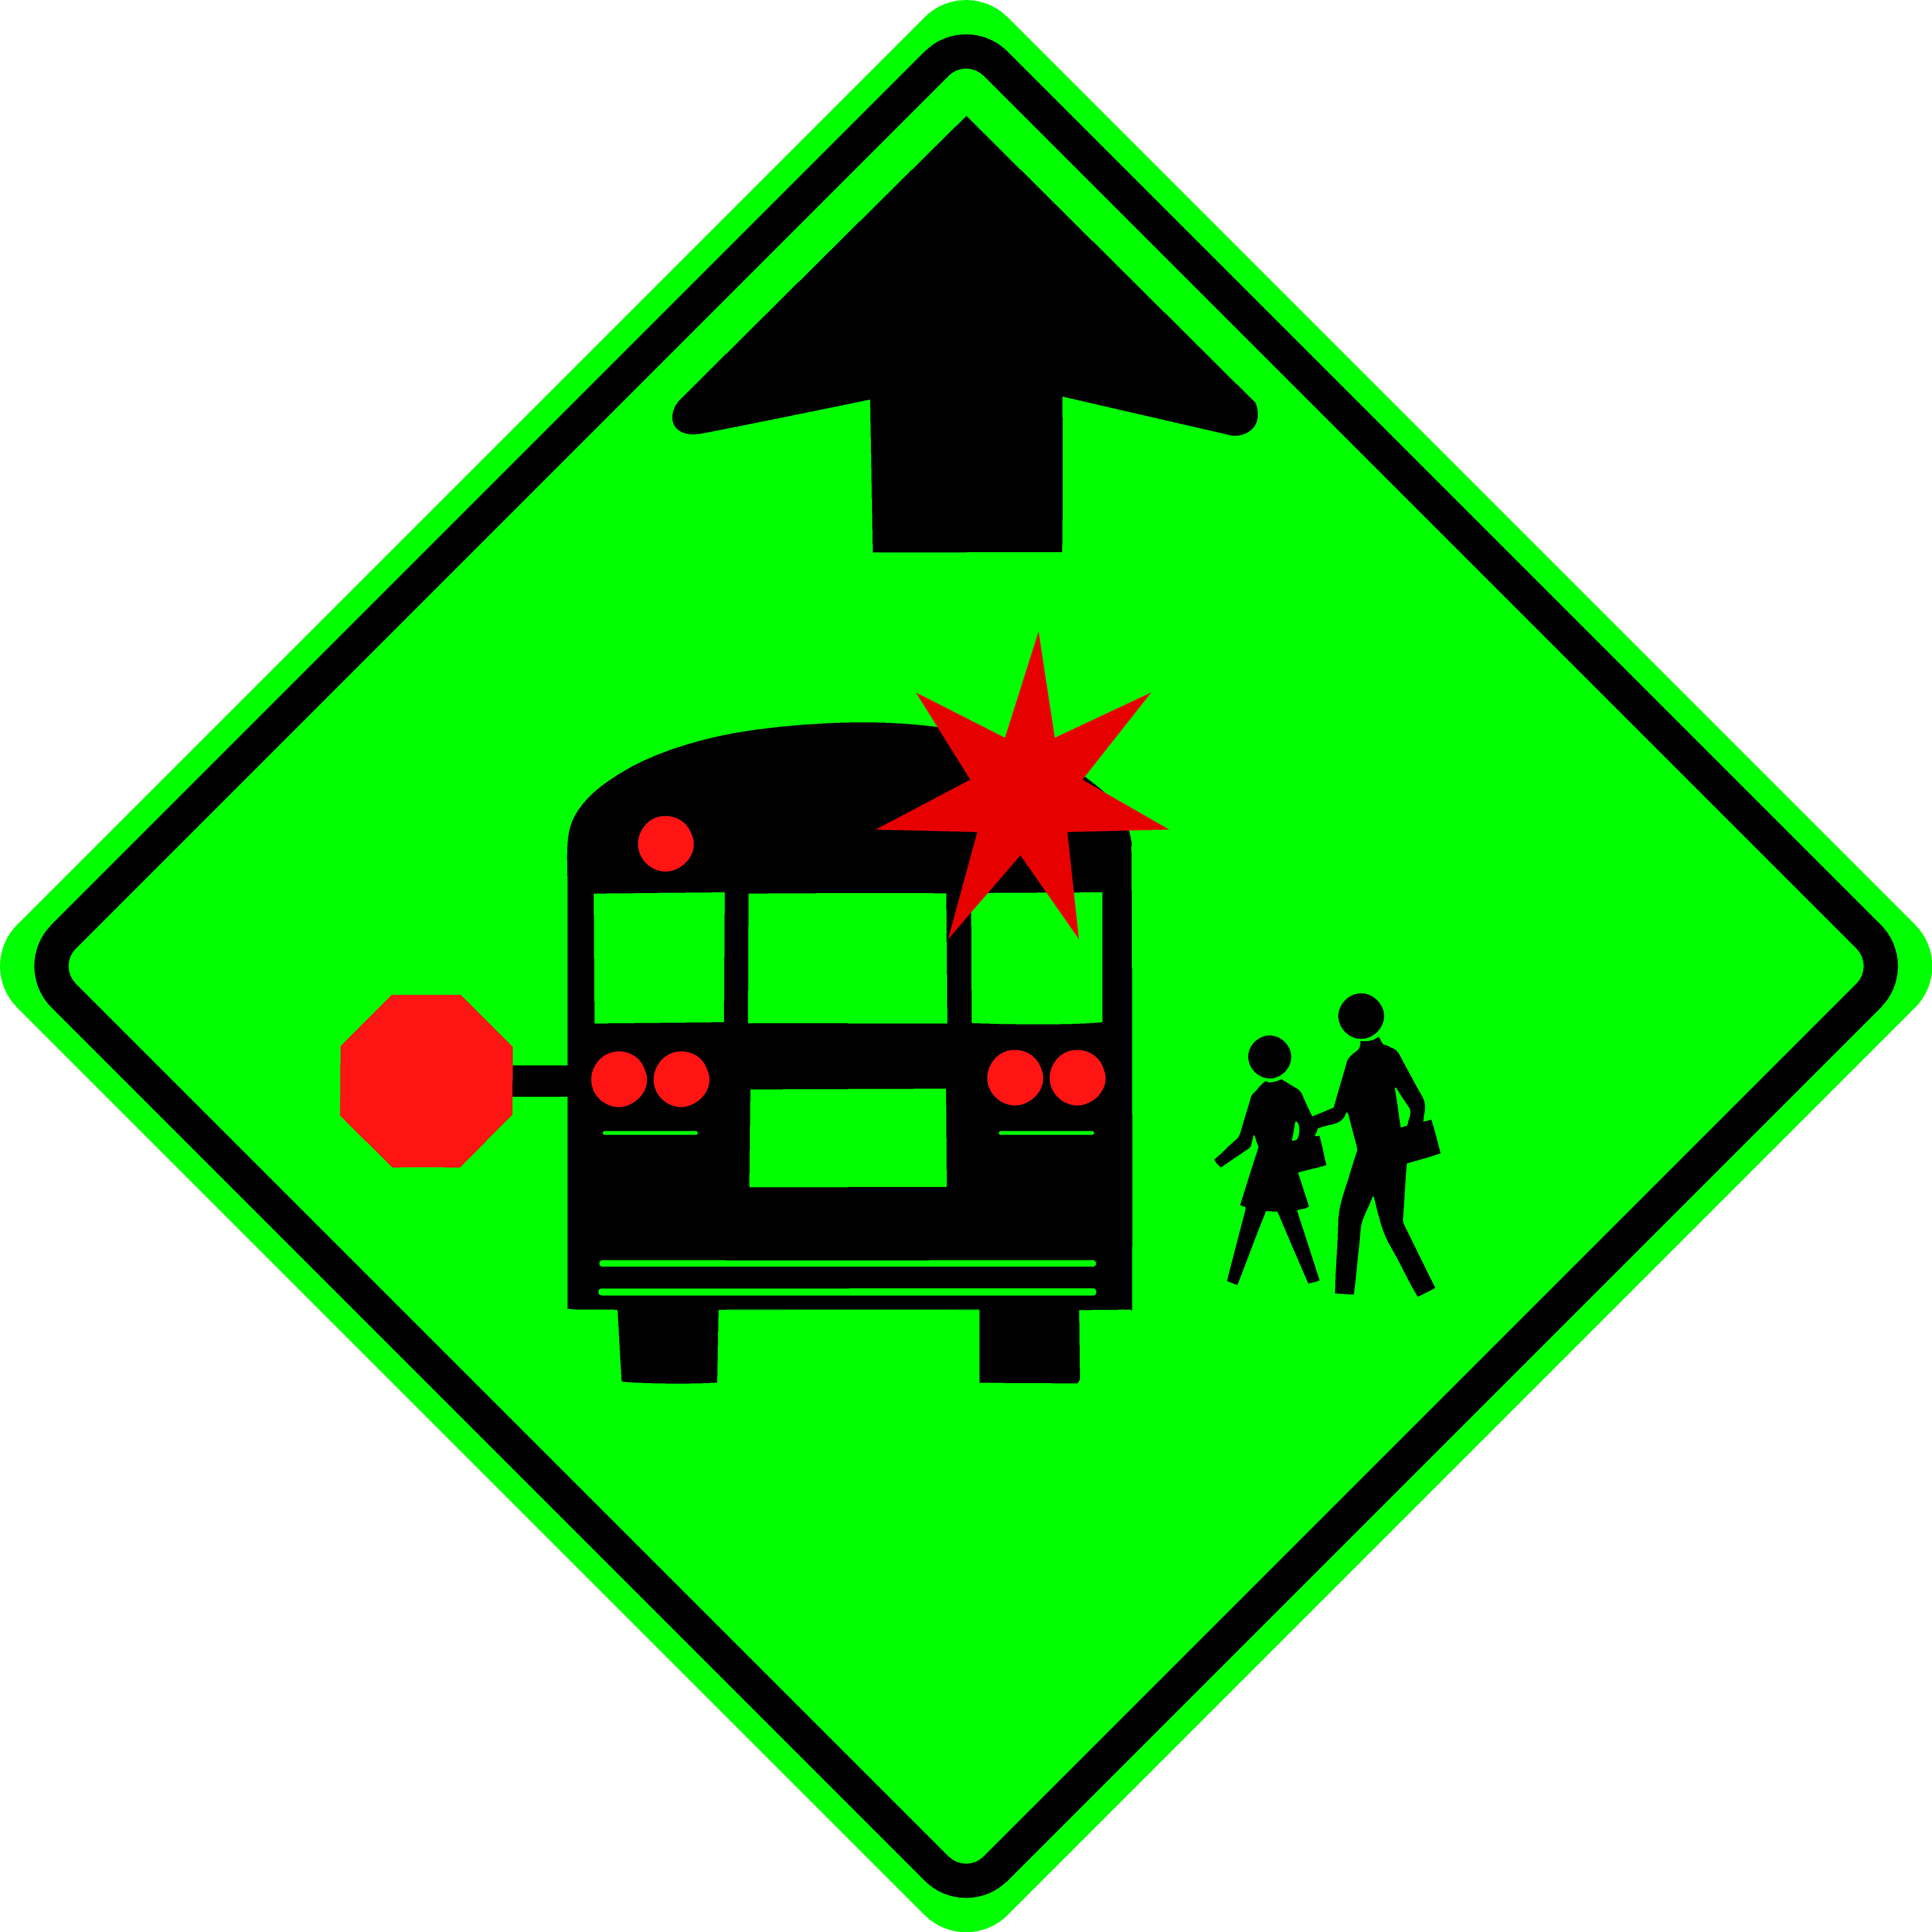 School Bus Stop Ahead (S3-1)